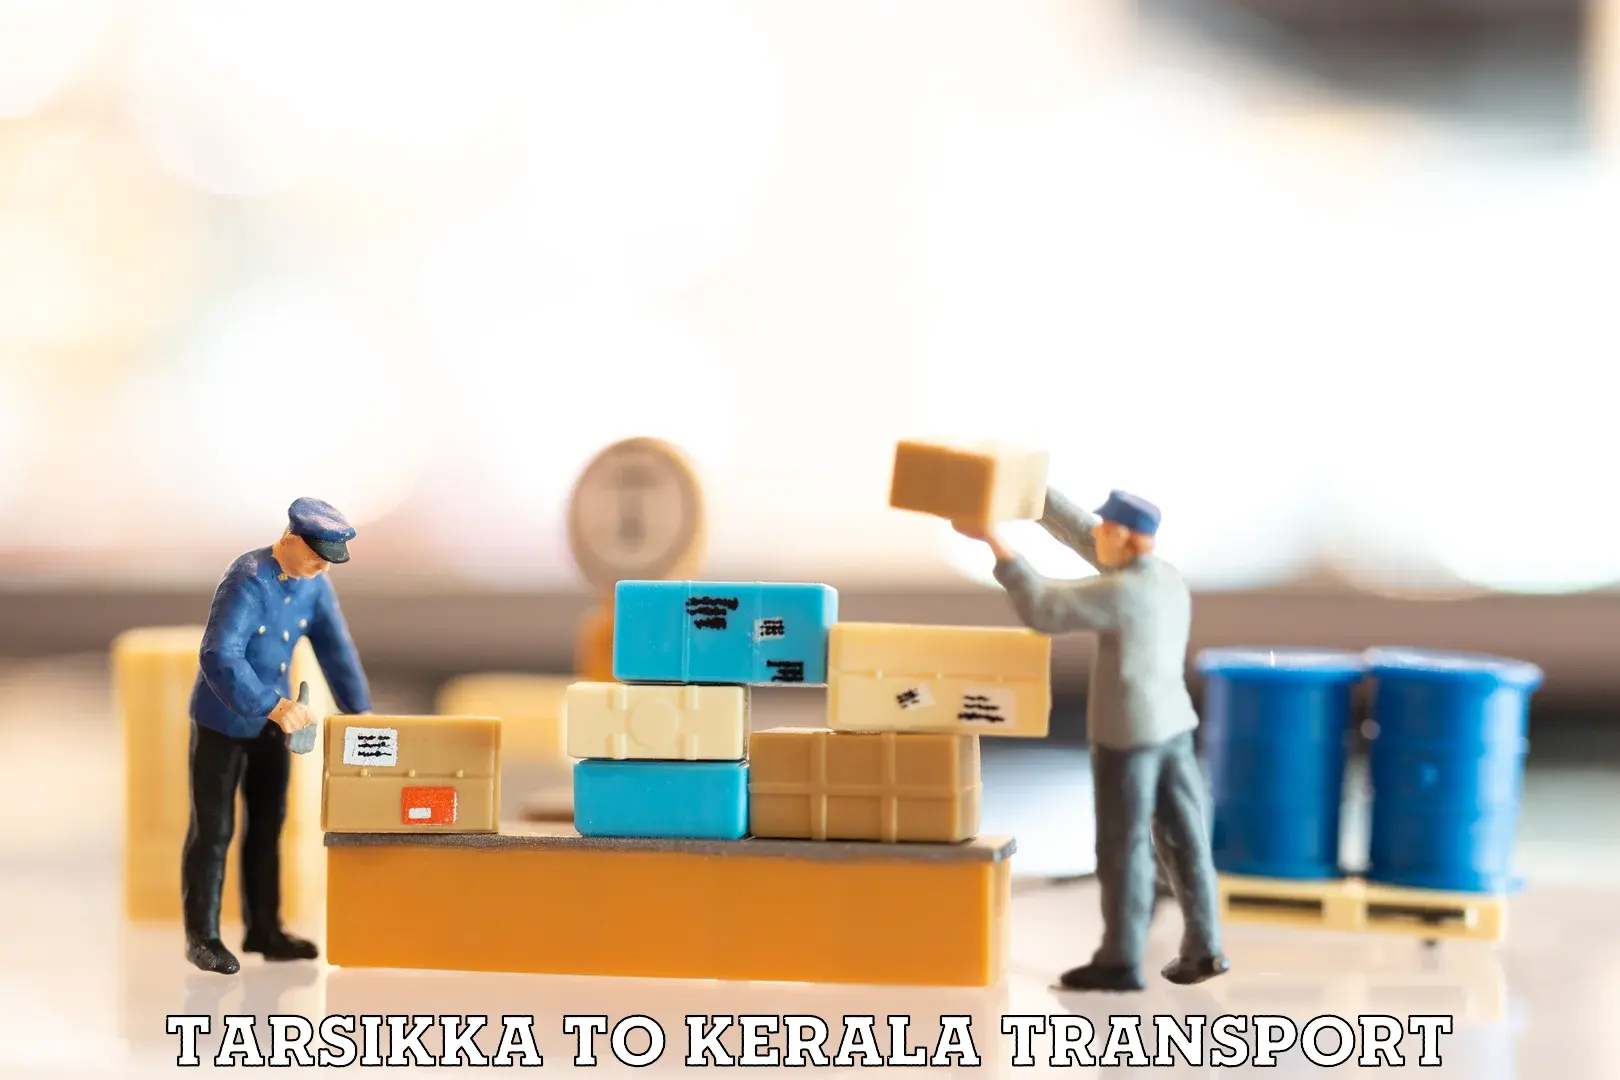 Furniture transport service Tarsikka to IIIT Kottayam